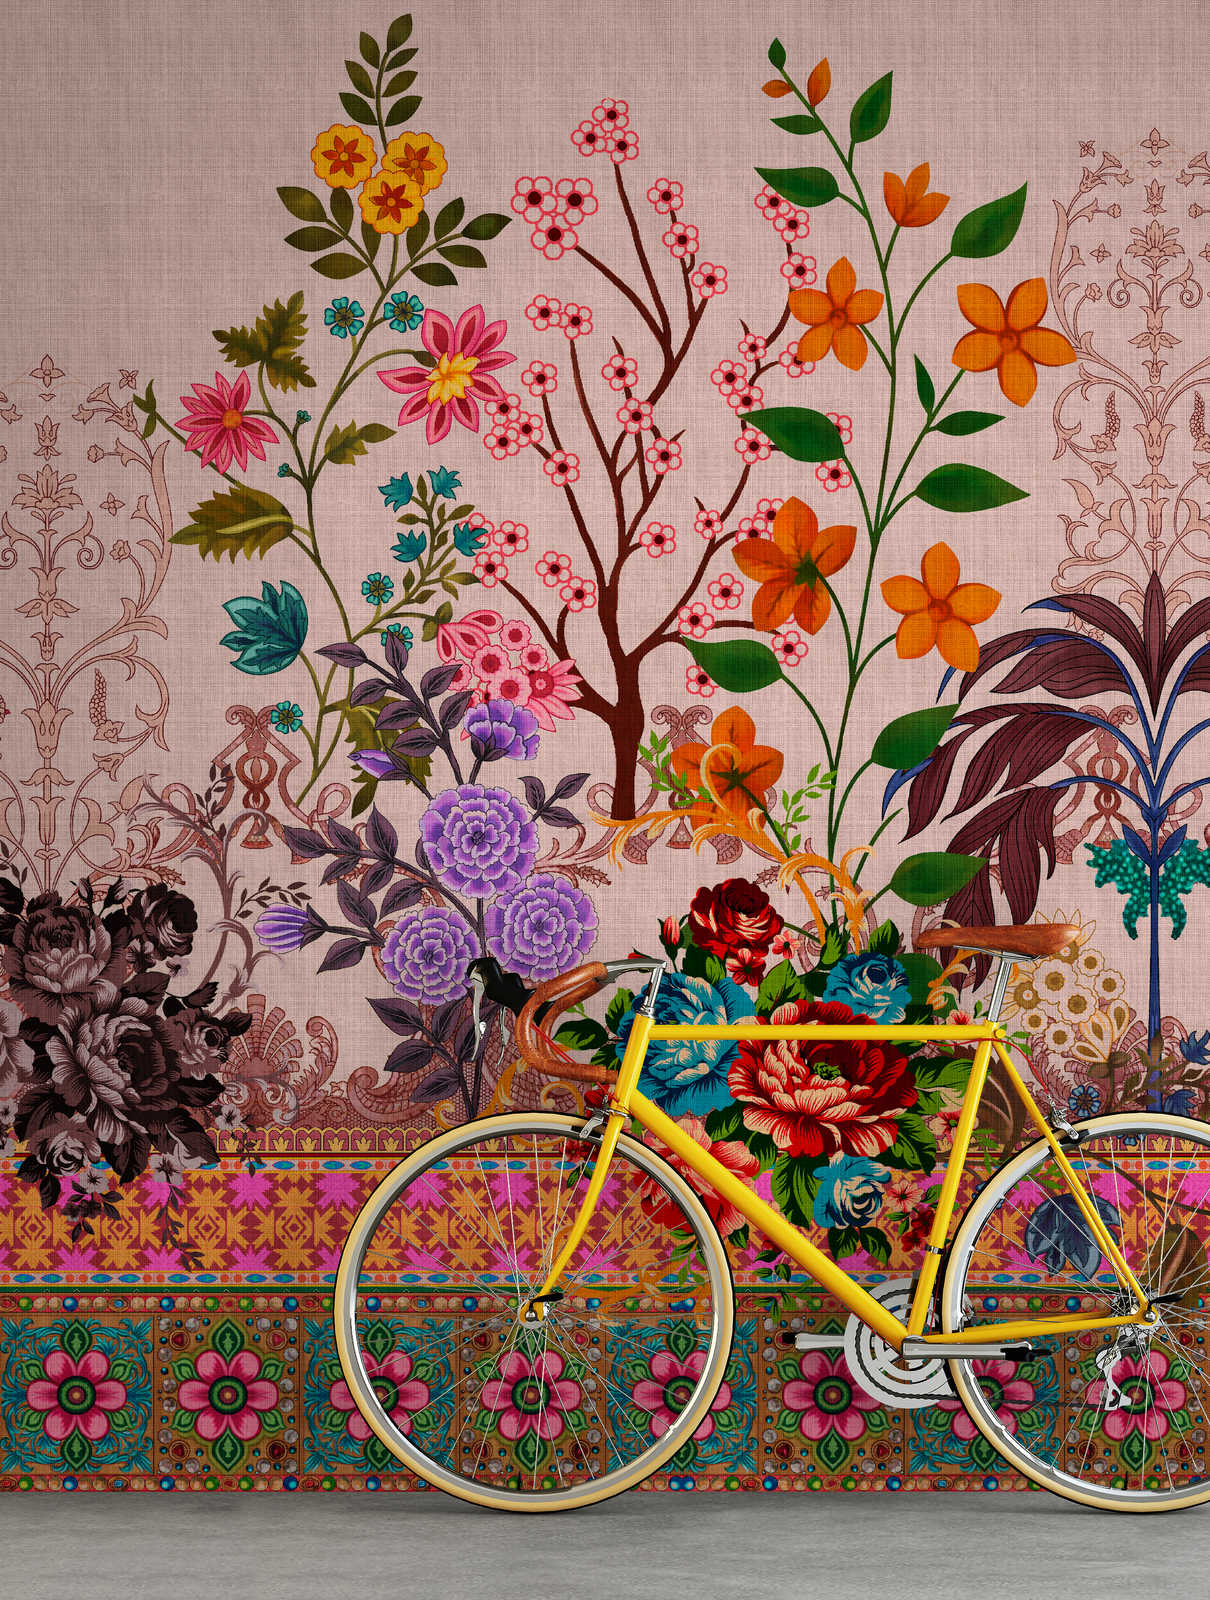             Oriental Garden 4 - Papier peint fleuri Motifs de fleurs et de bordures
        